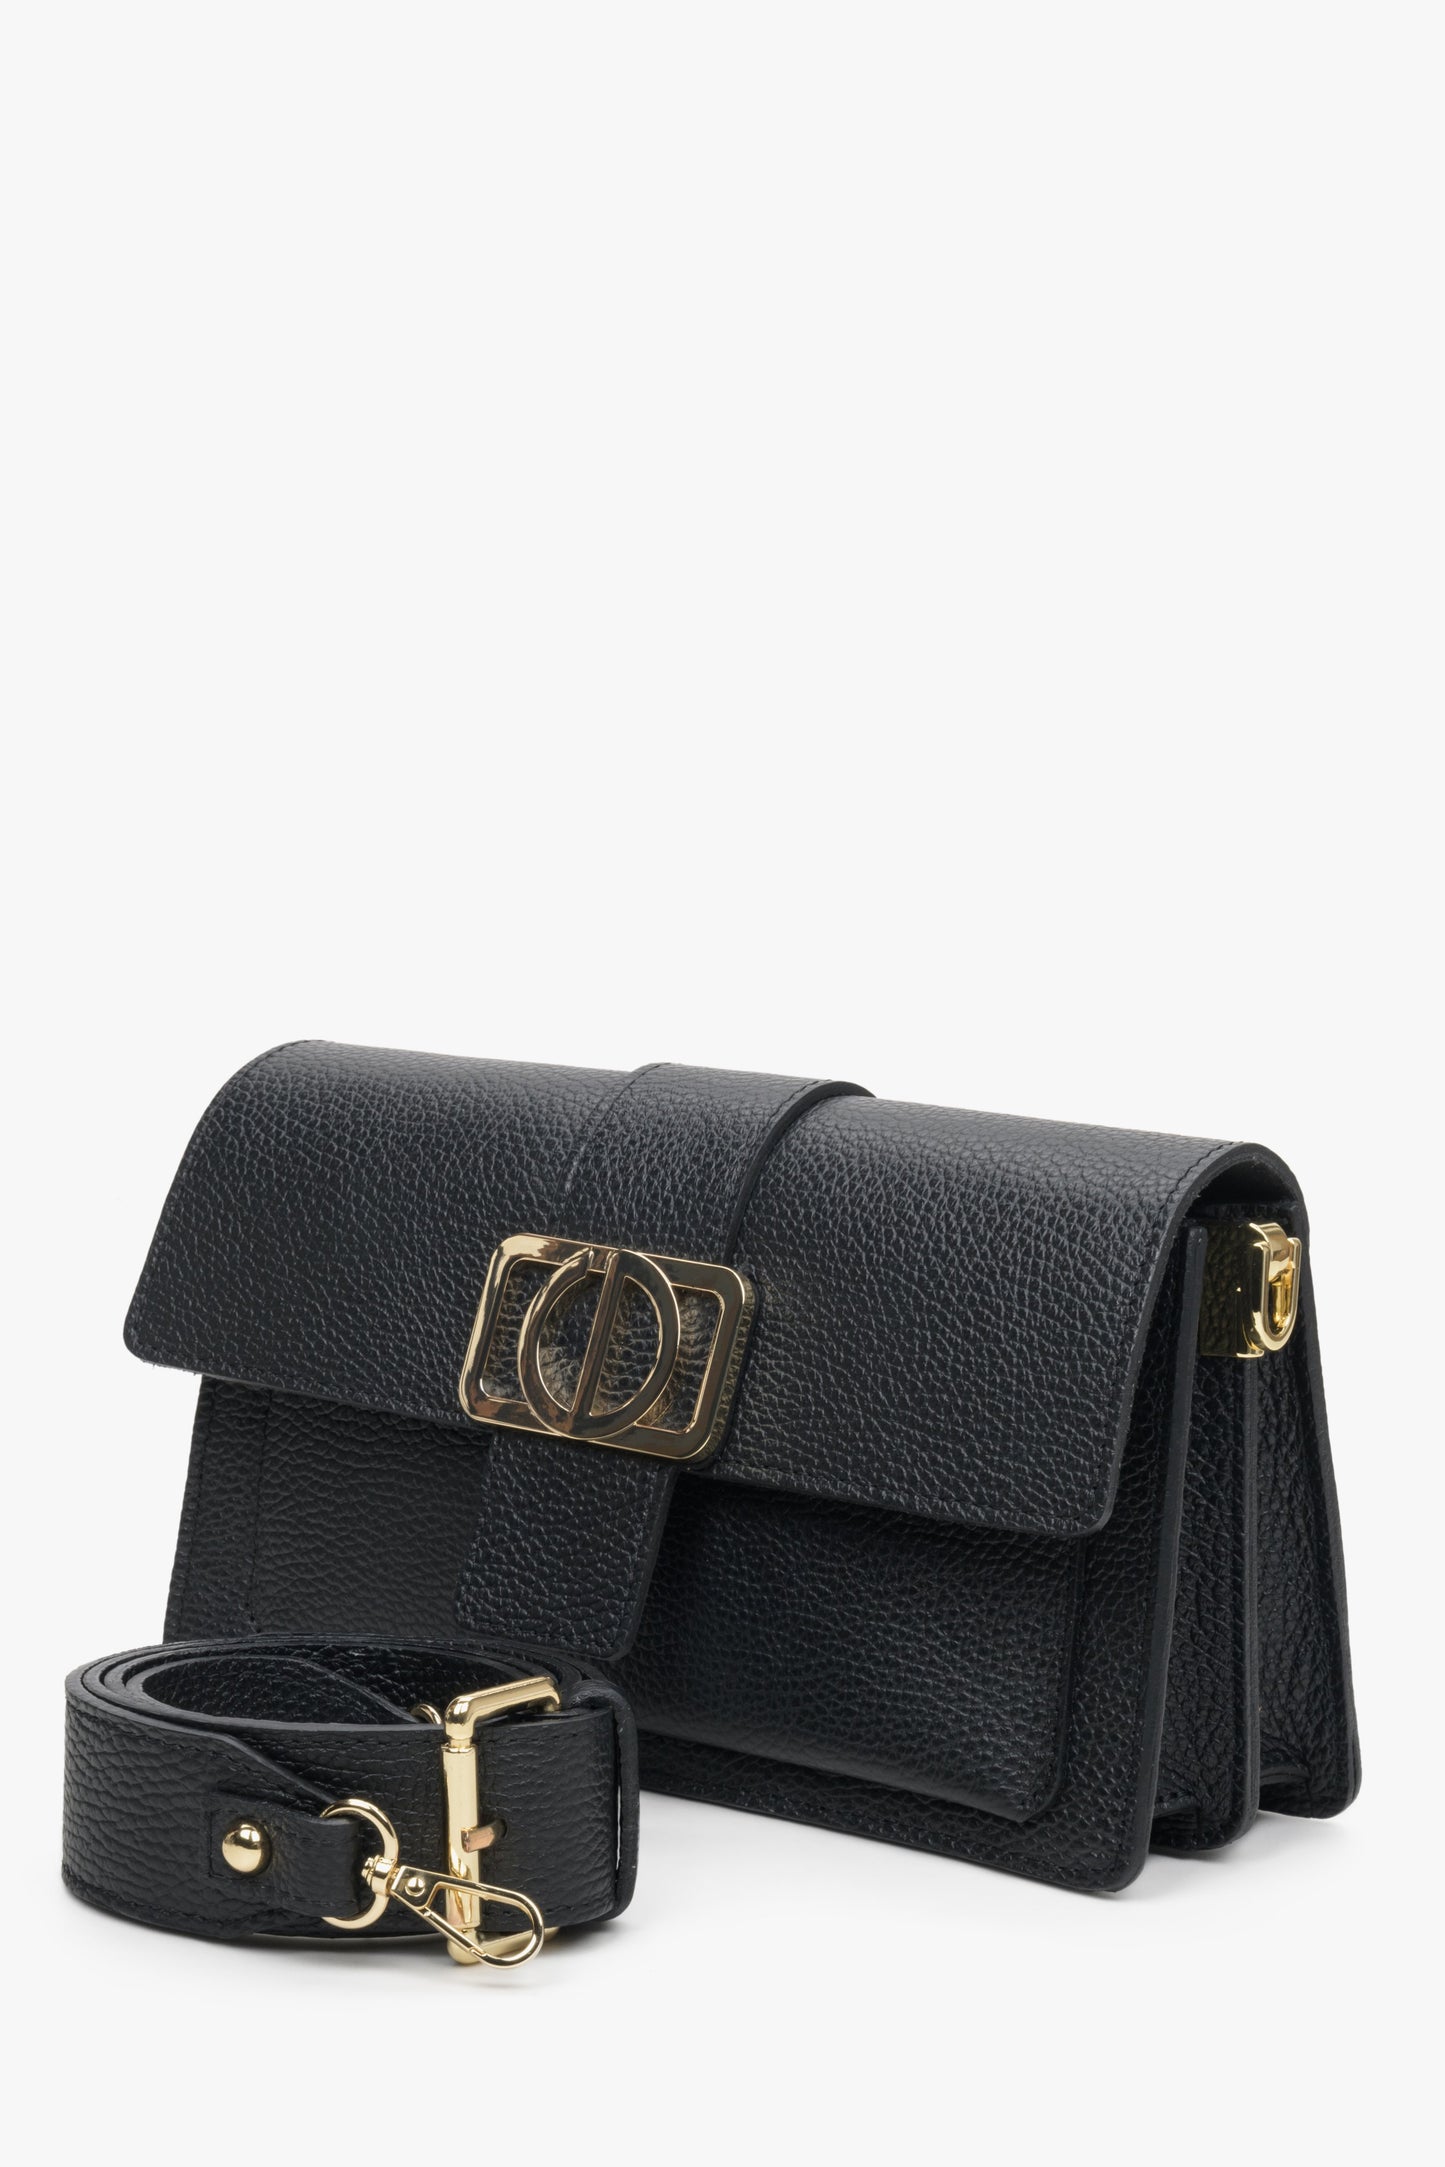 Mała, poręczna torebka damska na ramię w kolorze czarnym z włoskiej skóry naturalnej marki Estro.